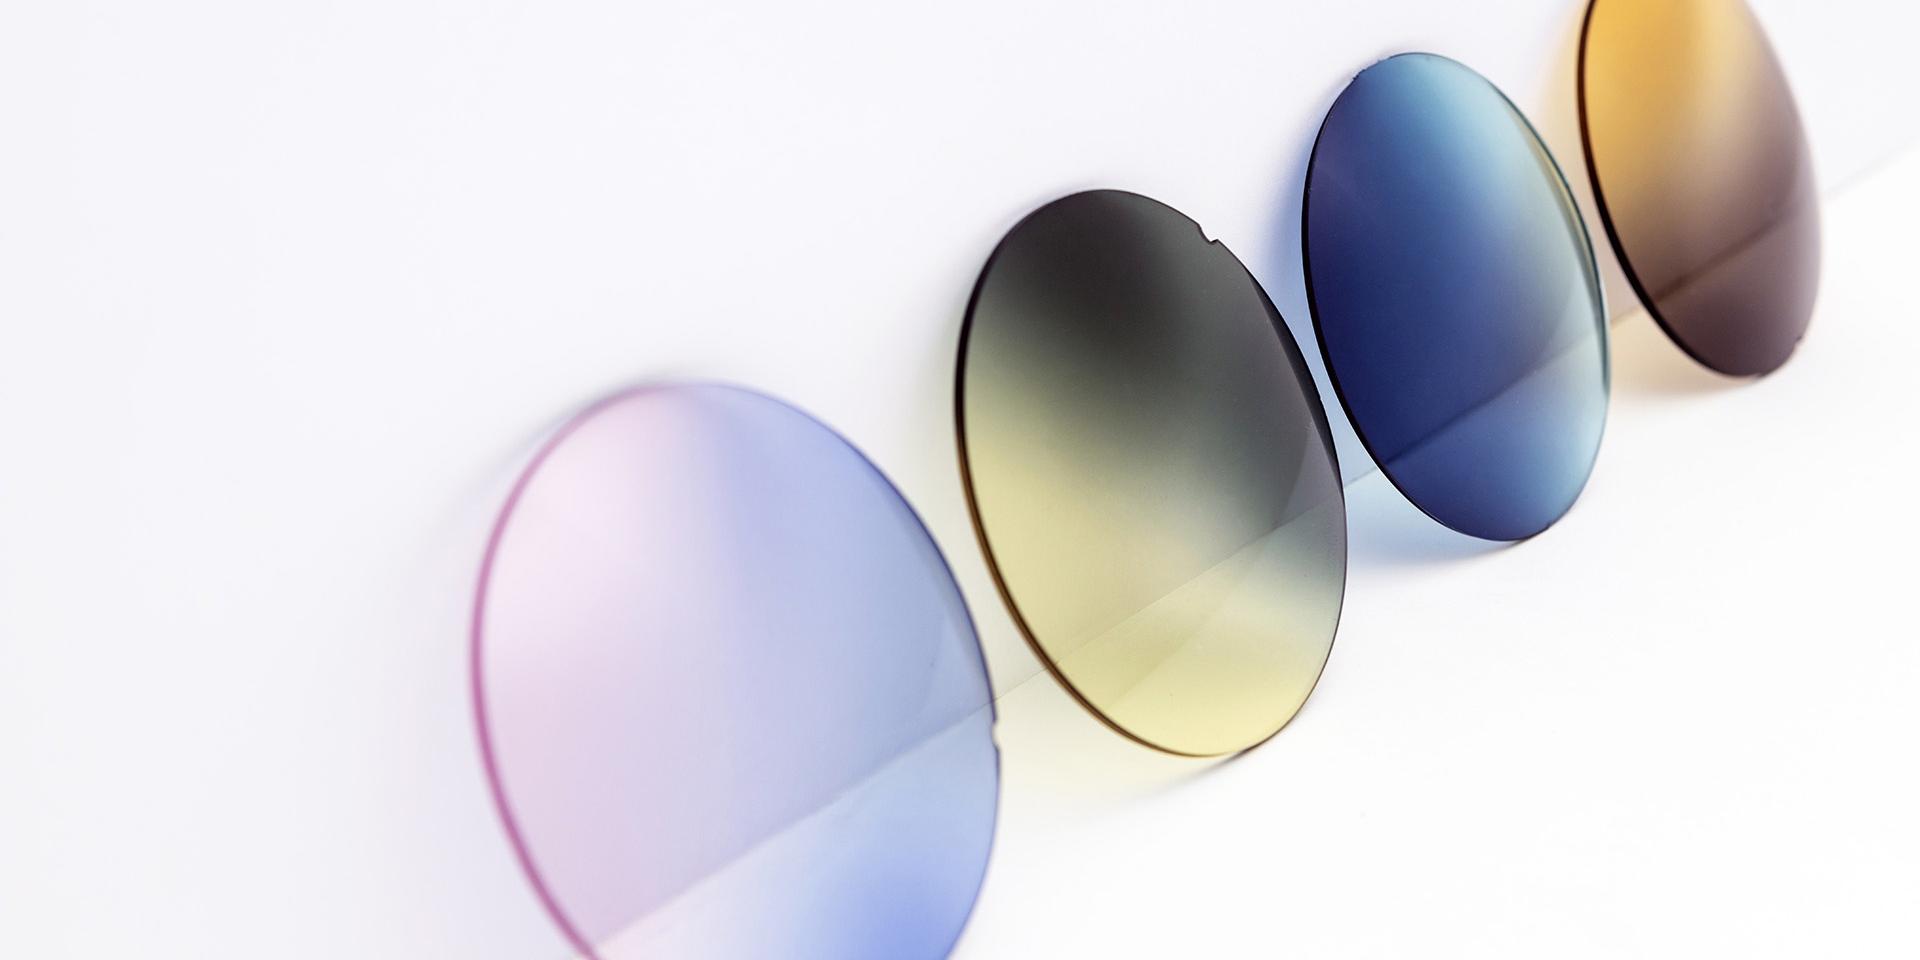 Lenti per occhiali da sole di diversi colori appoggiate su una superficie bianca: sfumature rosa-viola, giallo-grigio, blu e marrone.